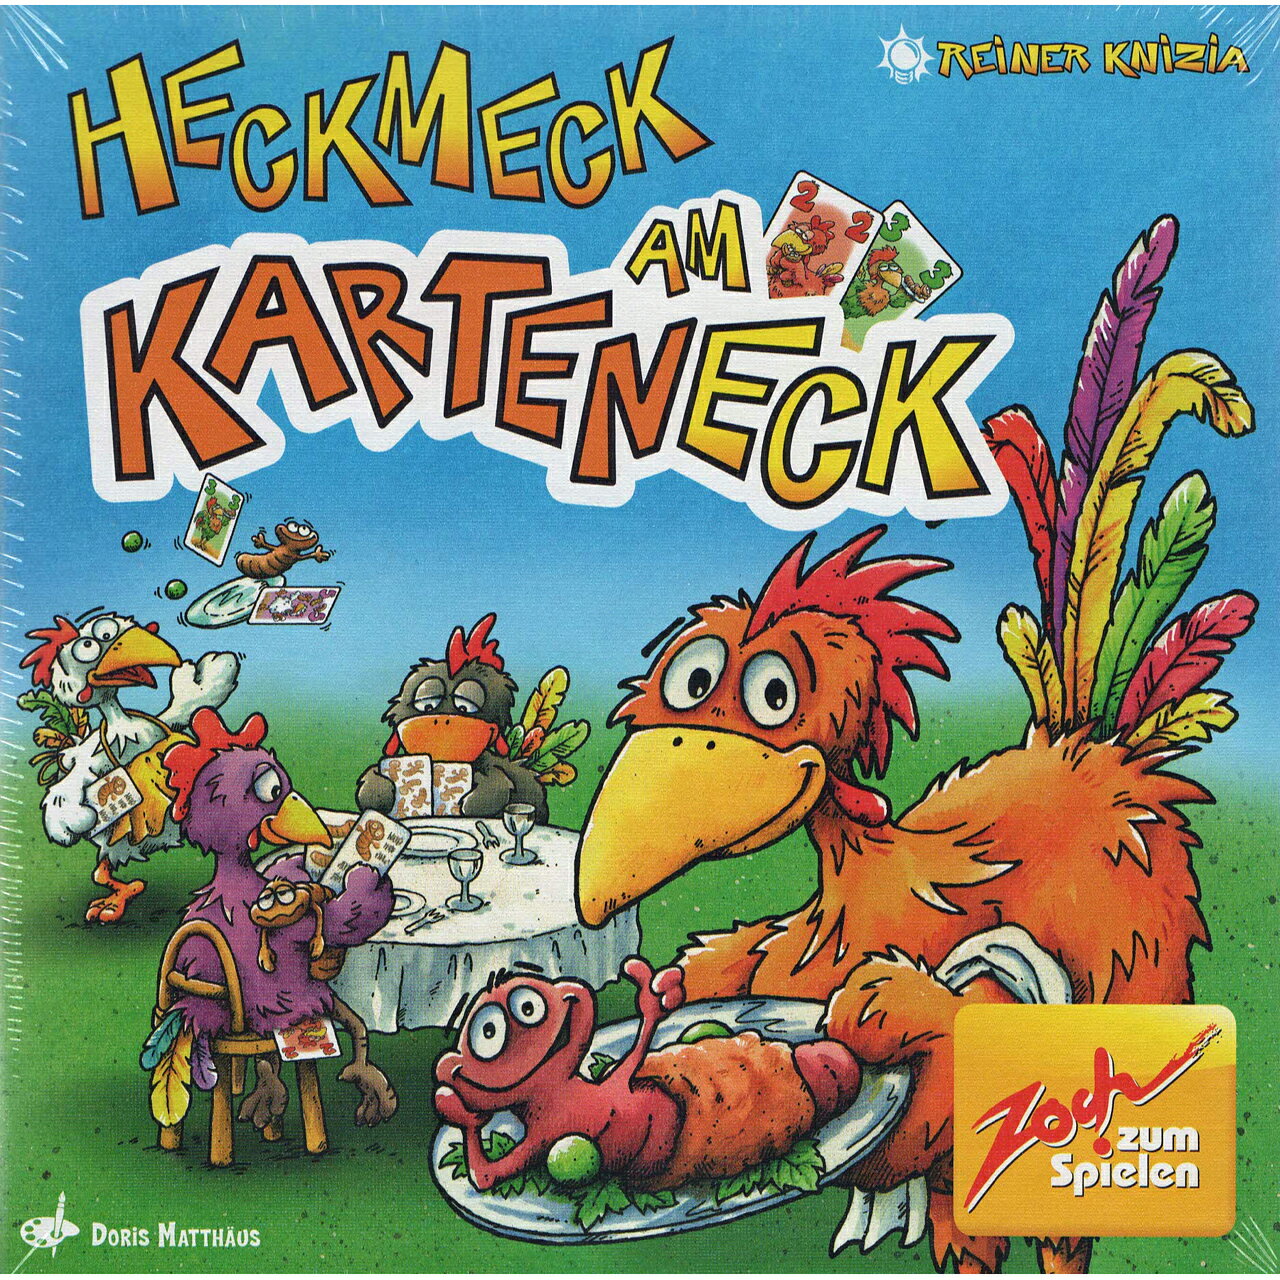 ヘックメックカード (ボードゲーム カードゲーム) 8歳以上 20分程度 2-6人用